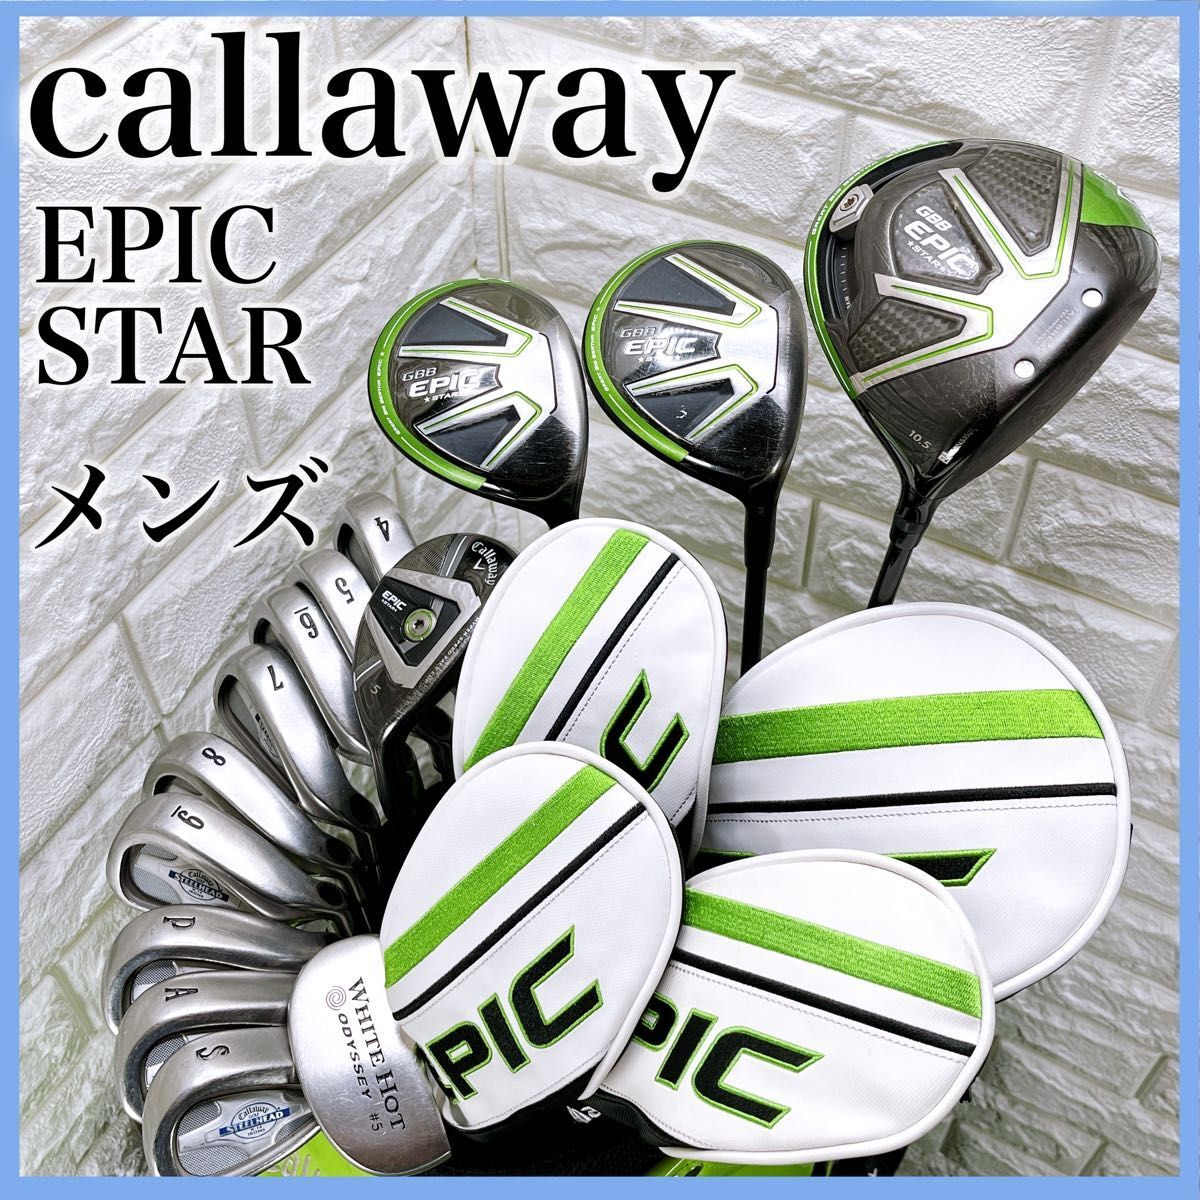 キャロウェイ EPIC メンズ ゴルフセット キャディバッグ付き 14本 右利き callaway エピック 初心者 フルセットの画像1